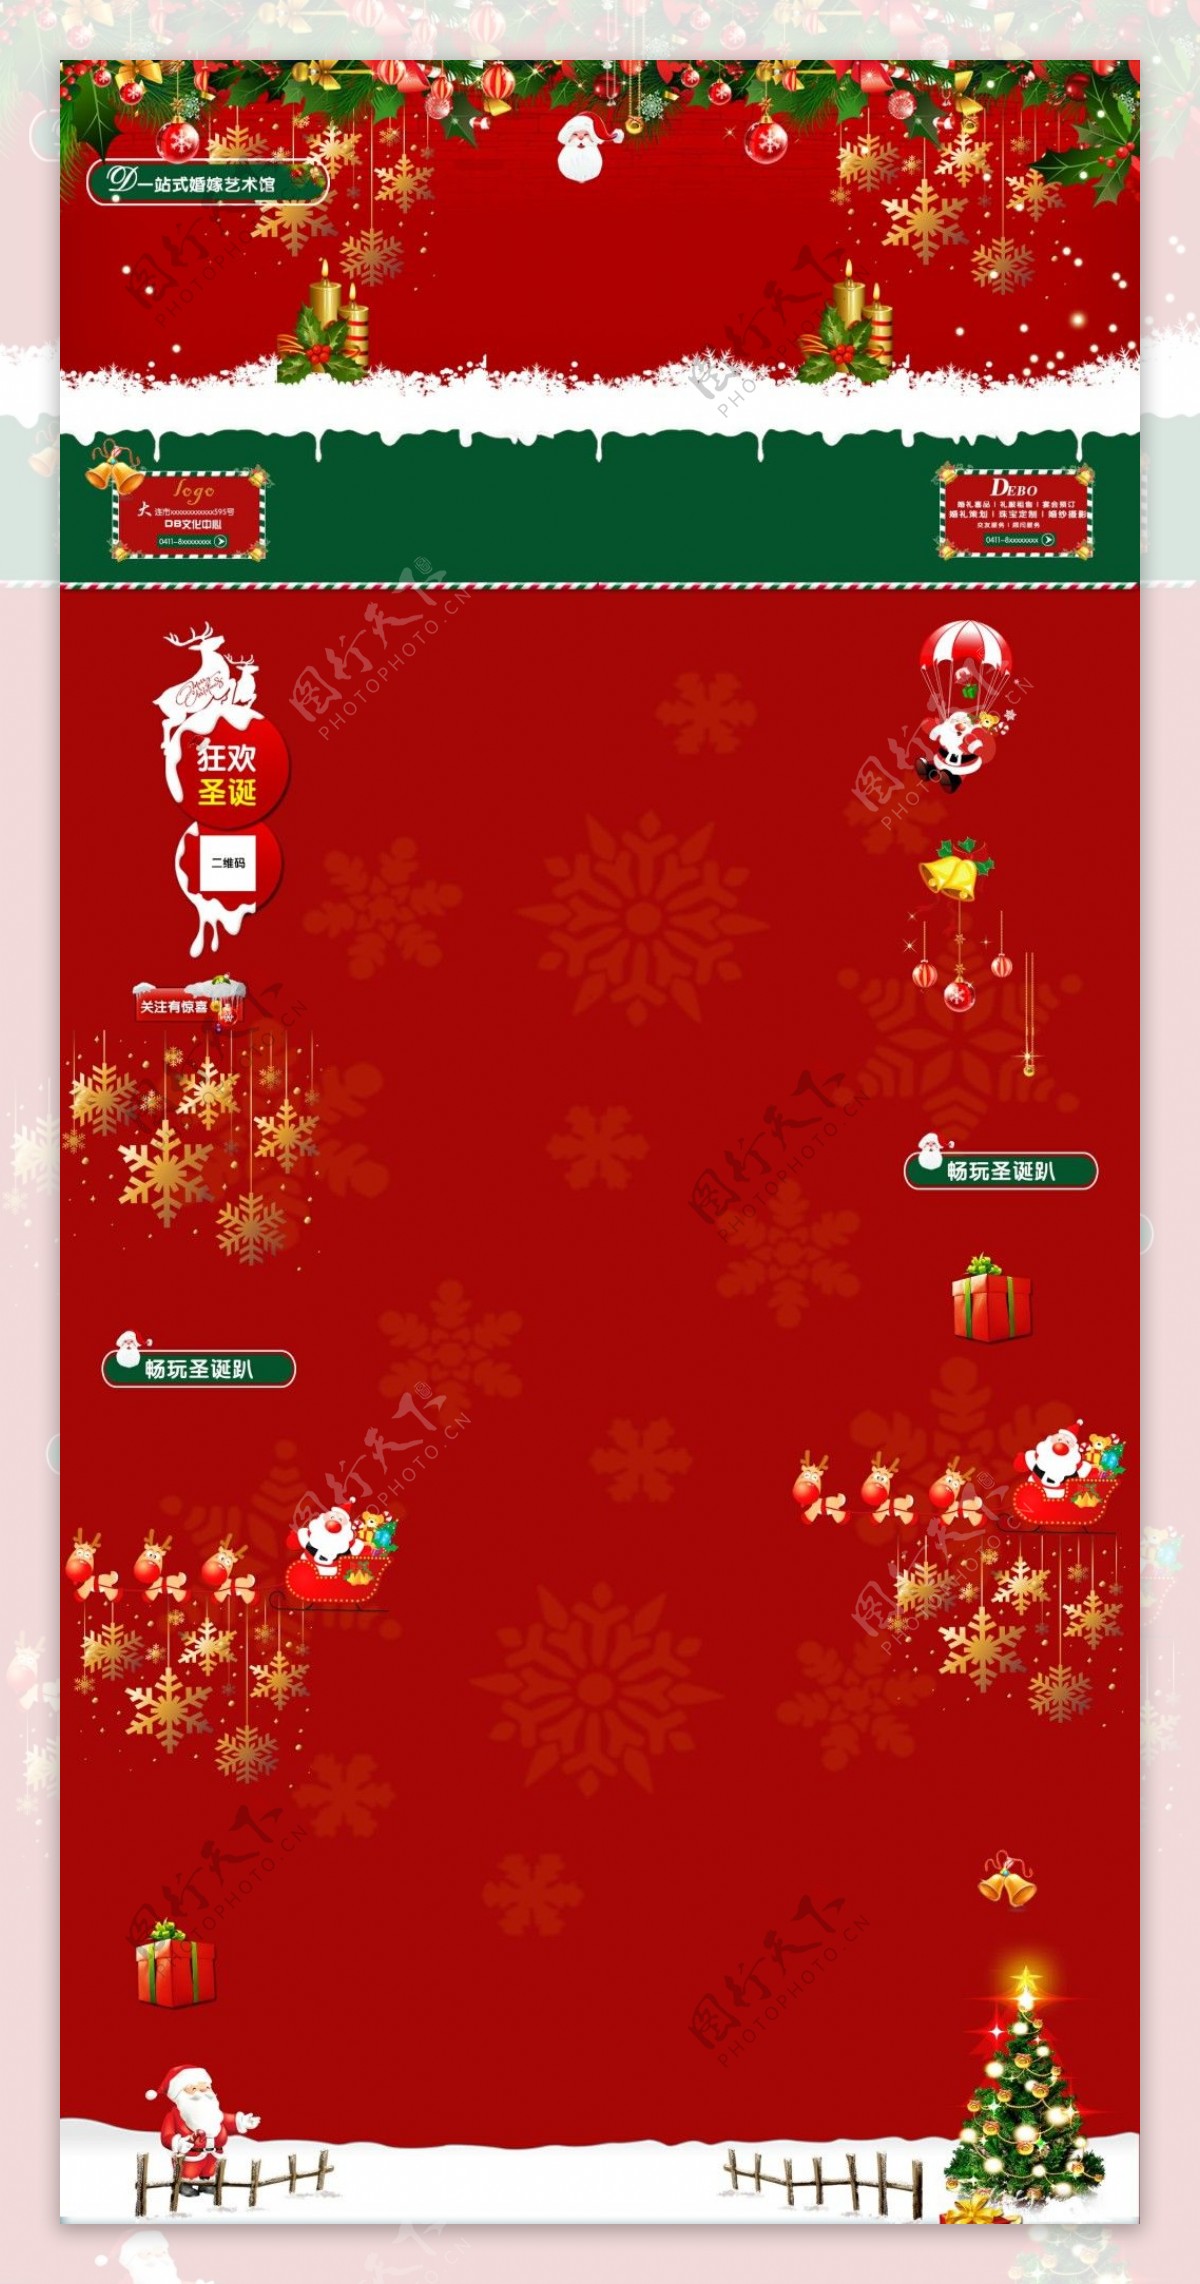 红色的圣诞微博背景图片设计PSD文件